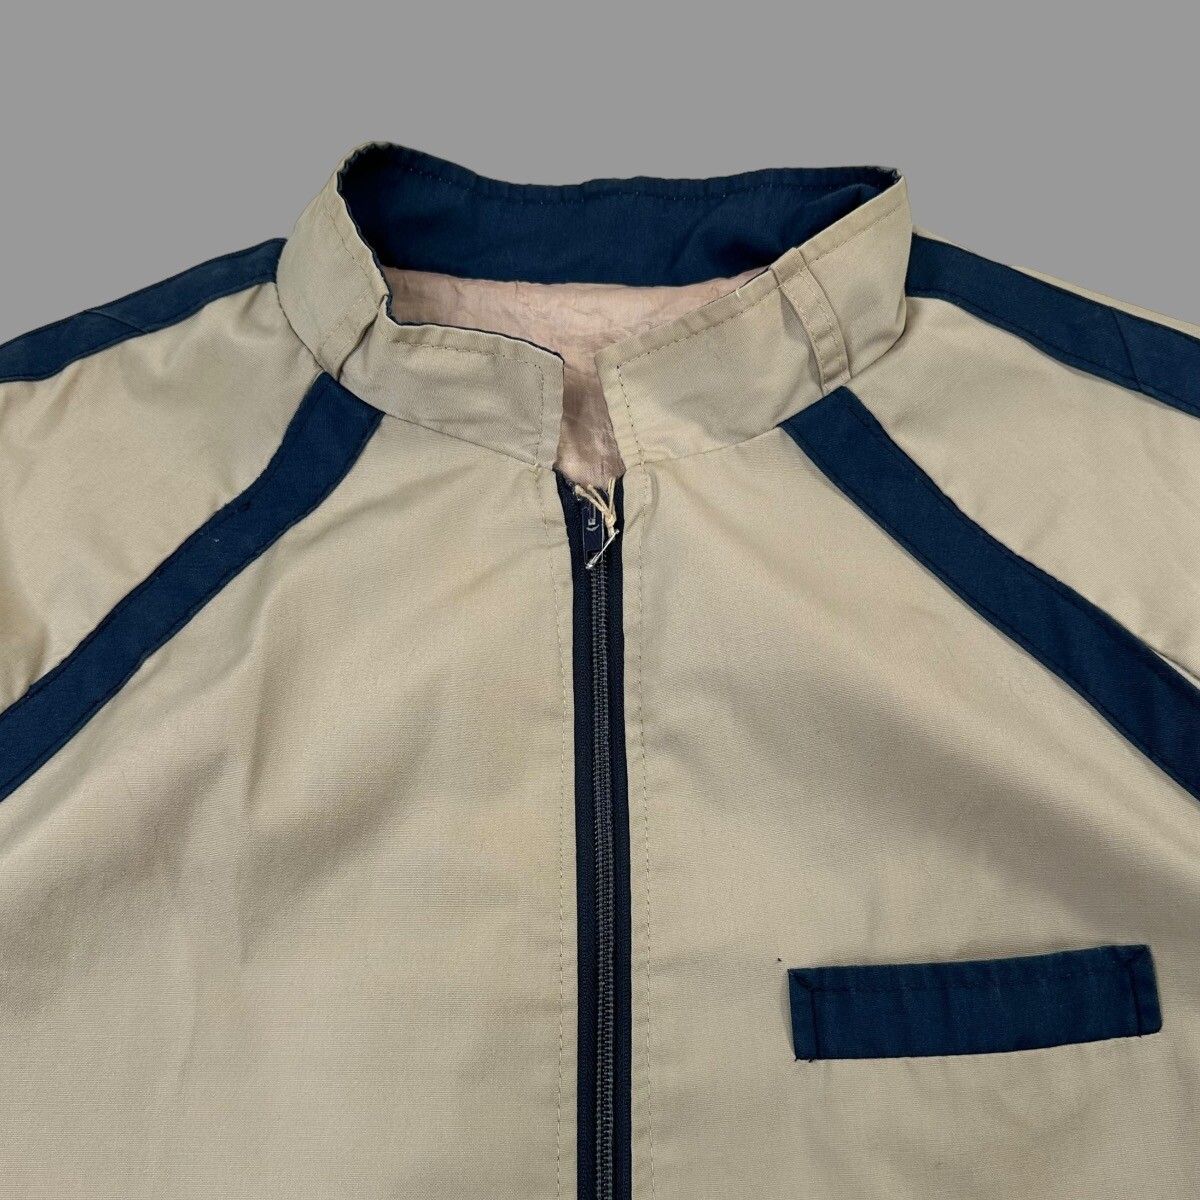 Vintage Vintage 1950s shop jacket Size US L / EU 52-54 / 3 - 4 Preview